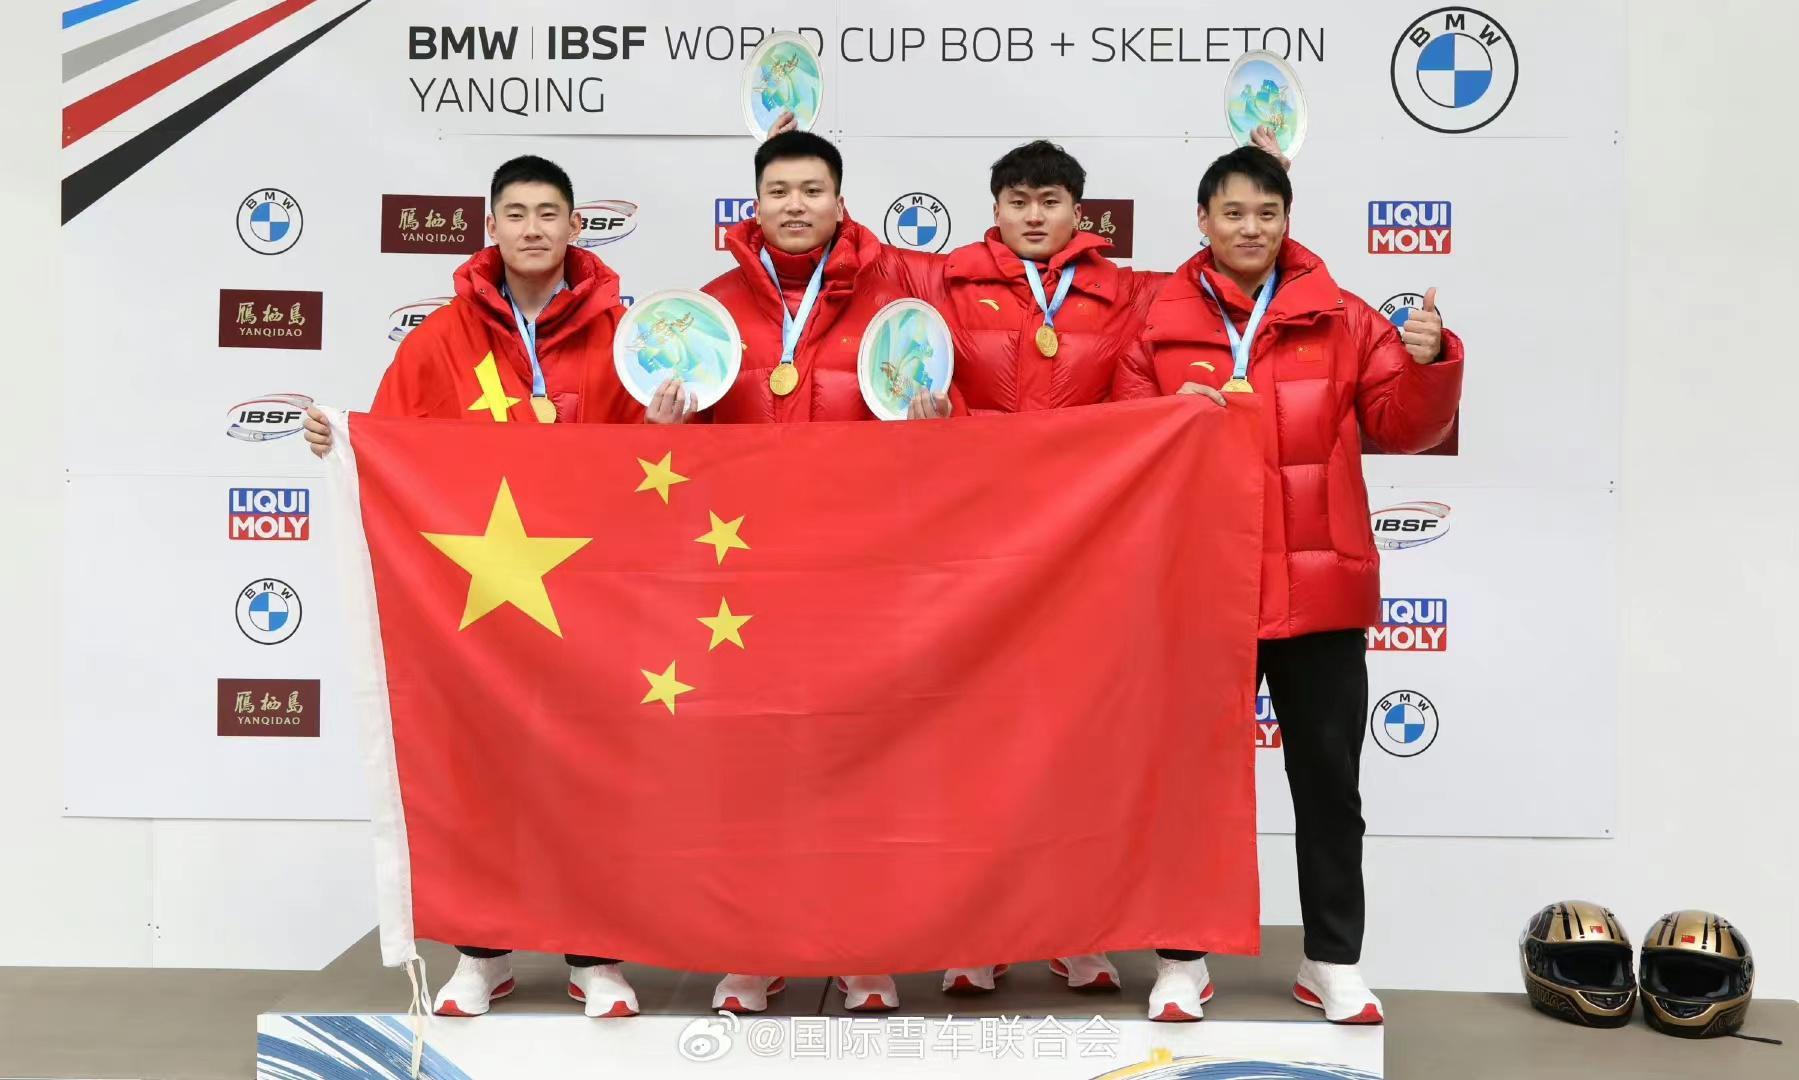 延庆站世界杯四人雪车项目获铜牌 中国男子雪车取得奖牌突破